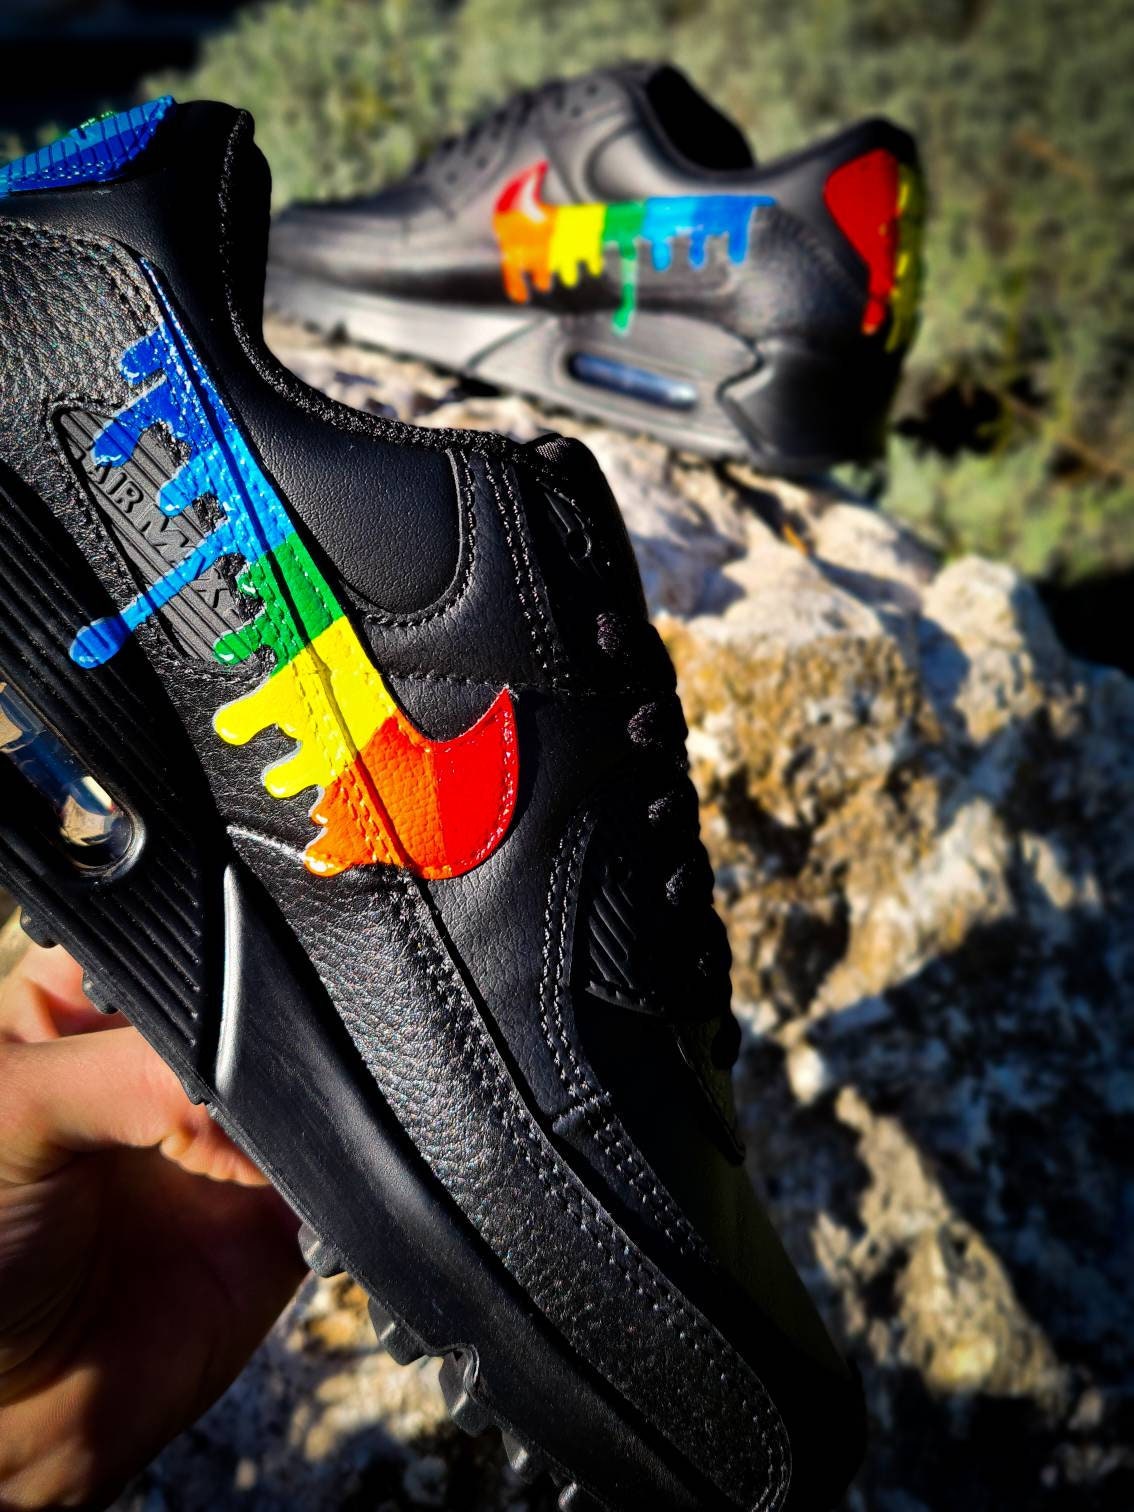 Respectievelijk Ontwaken bonen Nike Air Max Ltr 90 Rainbow Skittles Custom - Etsy